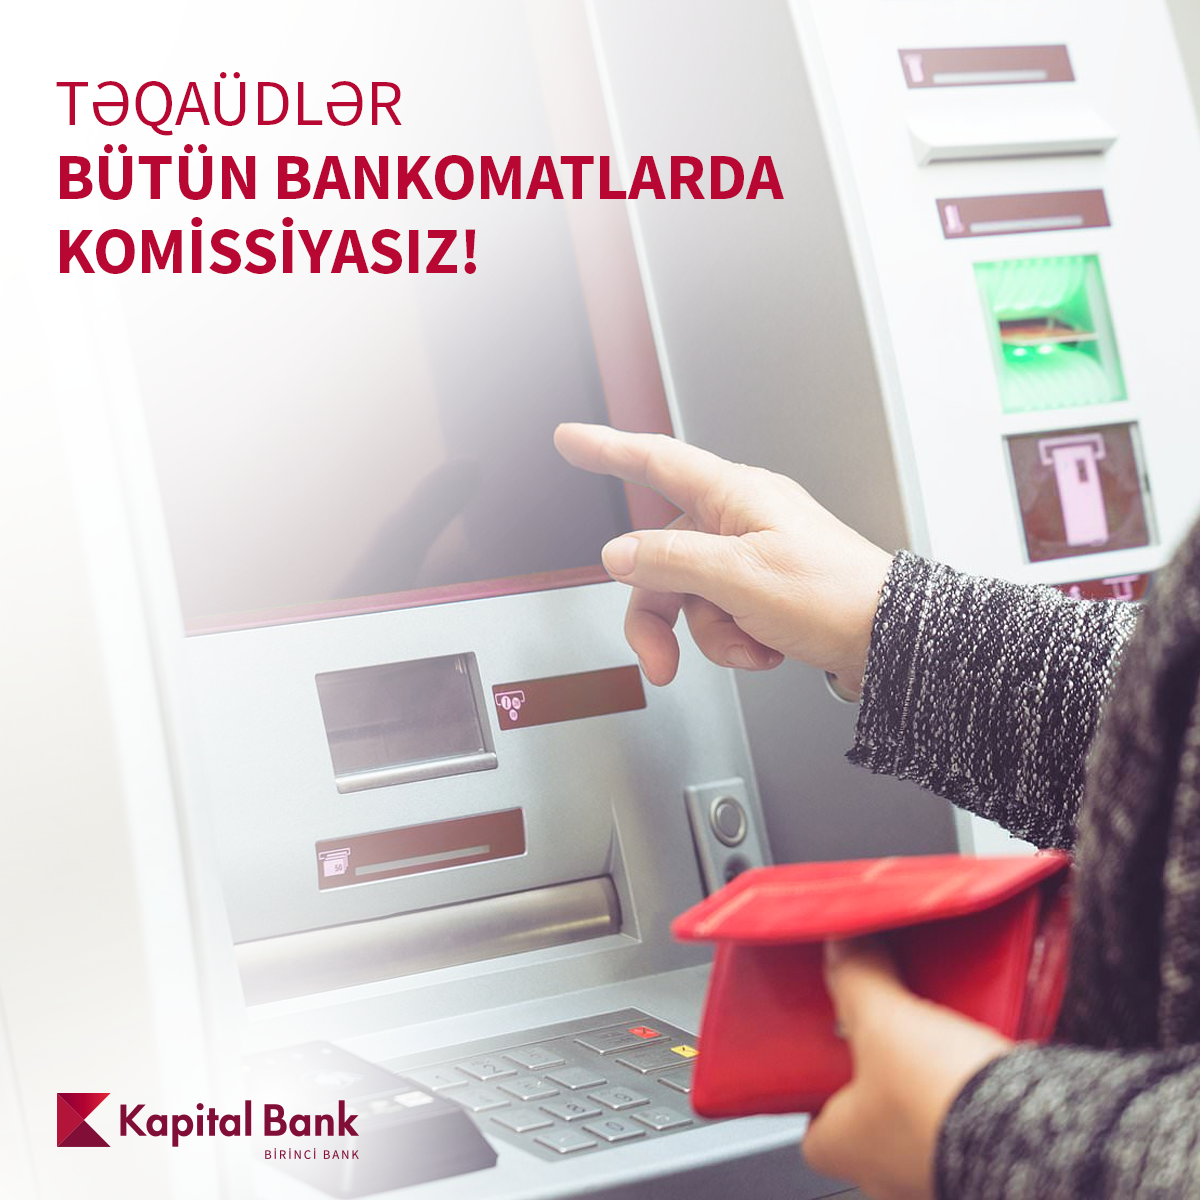 Kapital Bank-dan təqaüd və sosial kart sahiblərinə növbəti müjdə!